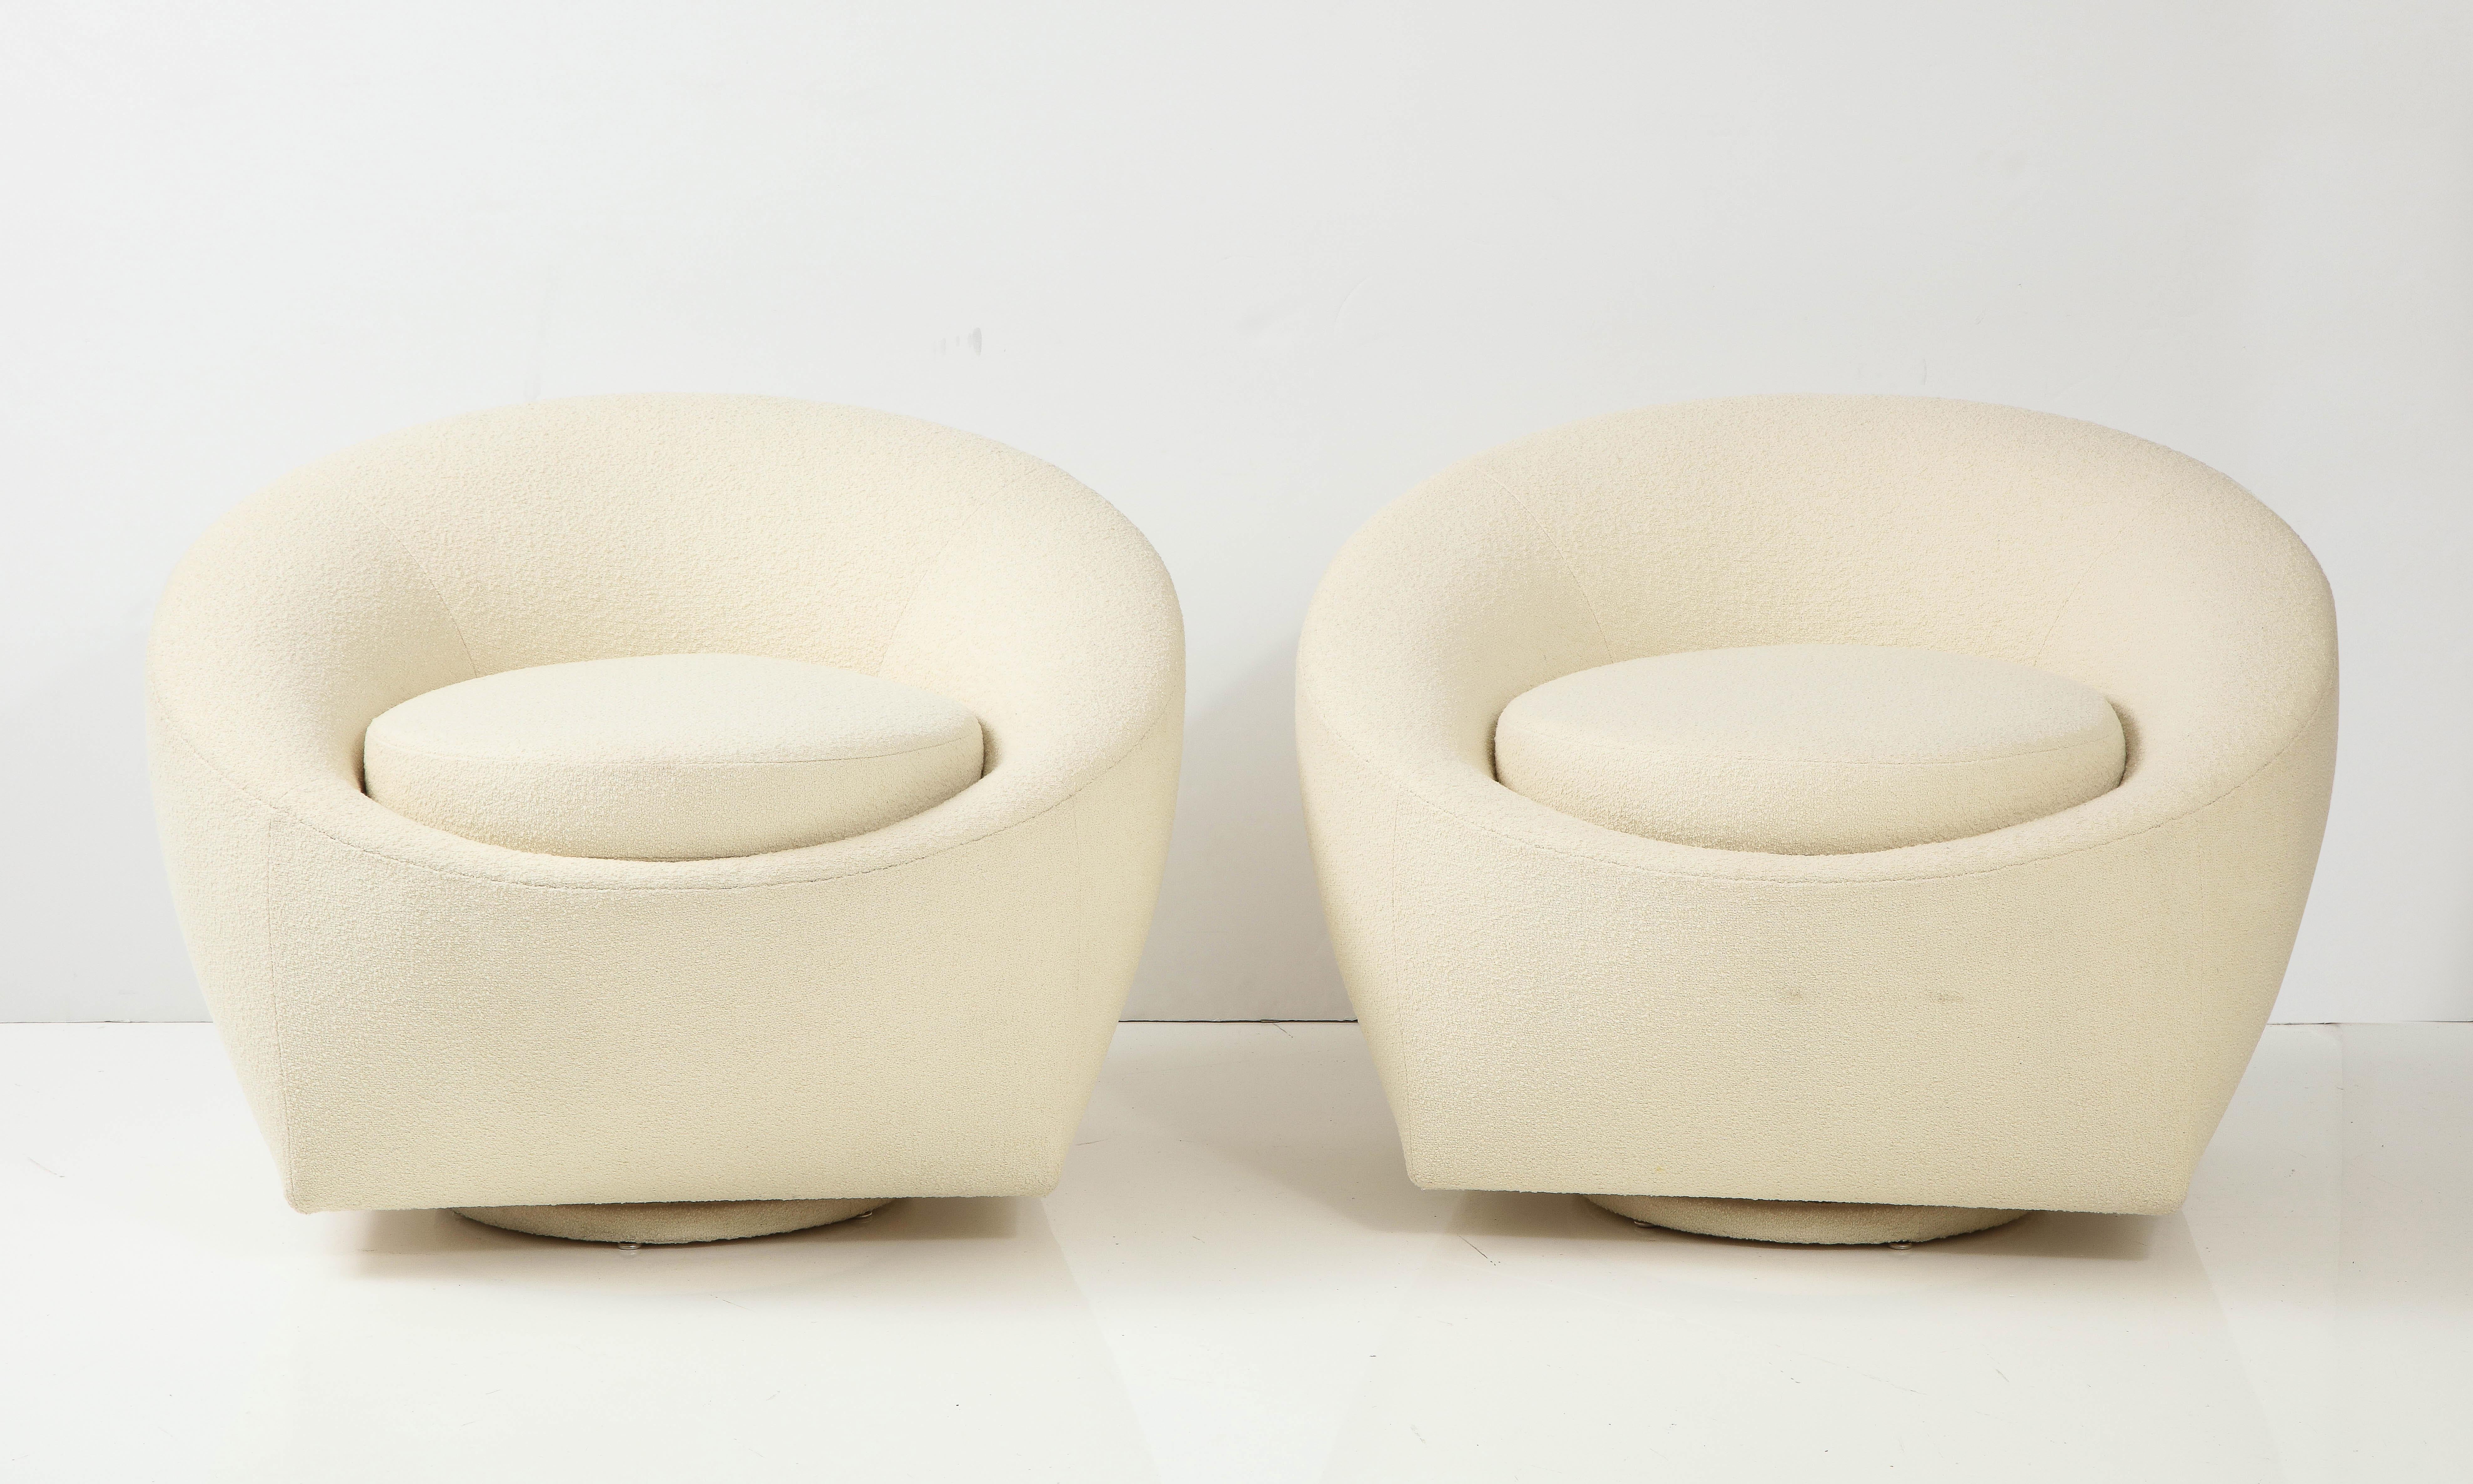 Paire de chaises pivotantes modernes du milieu du siècle qui ont été récemment retapissées 
En tissu souple Knoll Boucle ivoire. Les piétements des chaises sont également recouverts d'un nouveau tissu dans la couleur de l'eau. 
même tissu.
